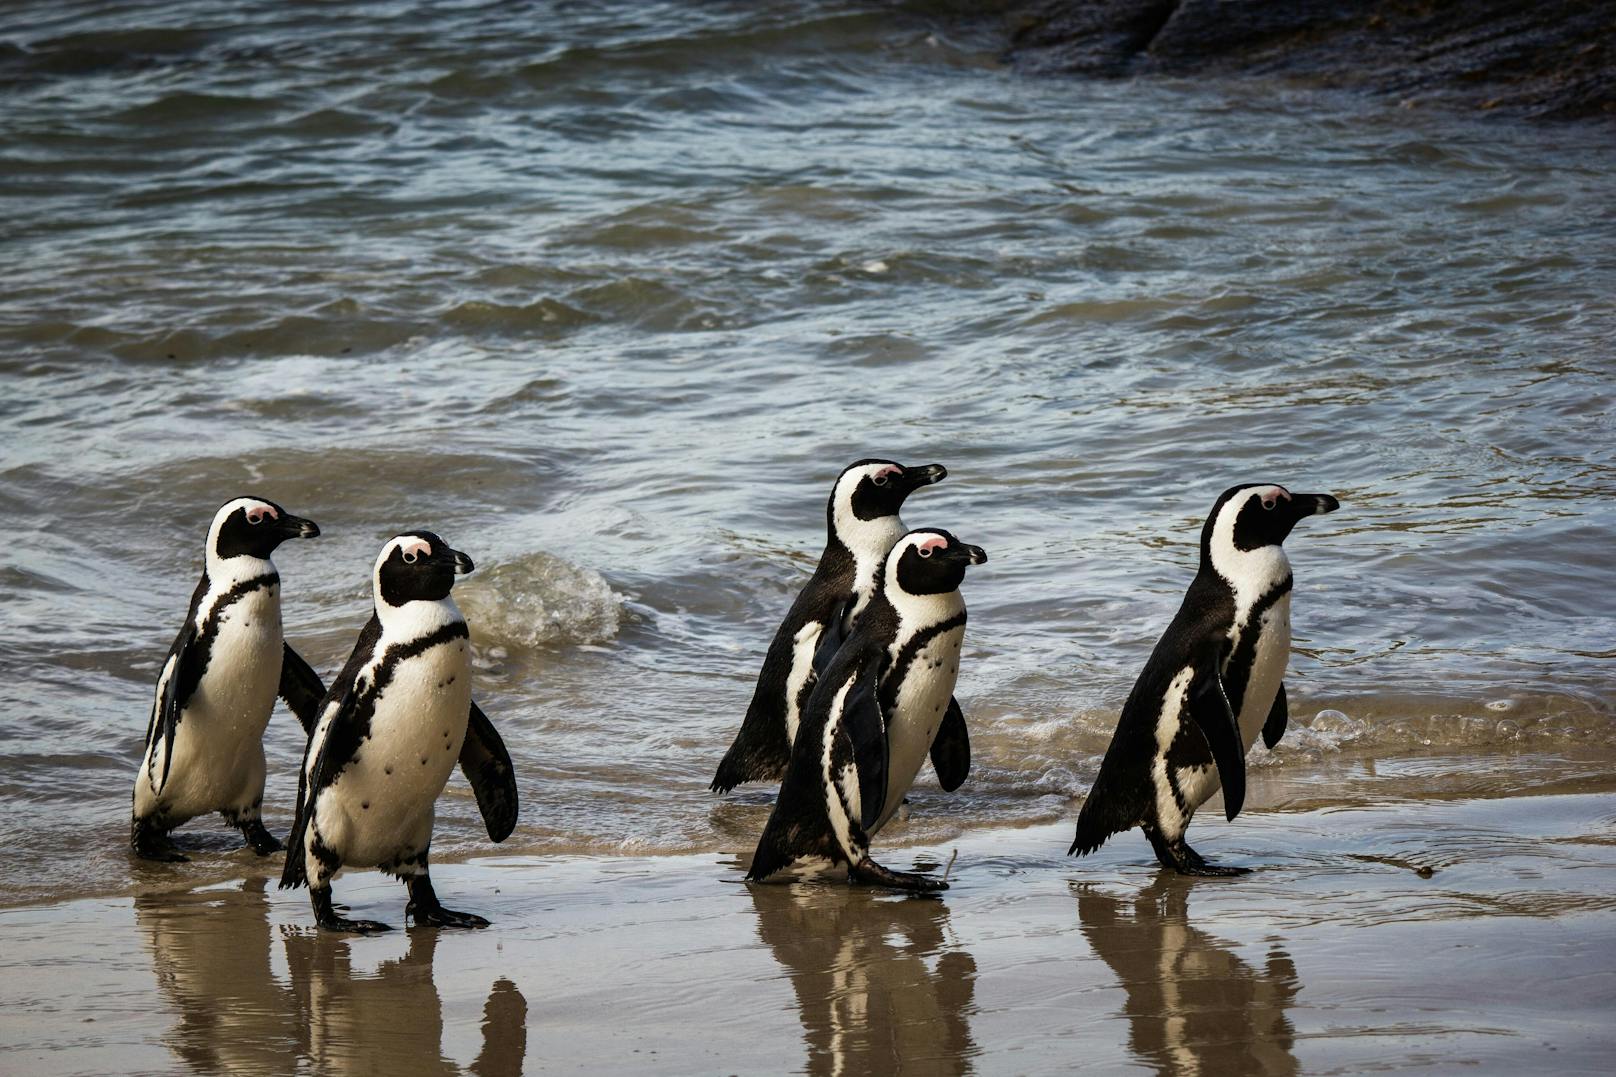 Pinguin-Fans dürfen sich jeden Abend über eine Pinguin-Parade freuen. 